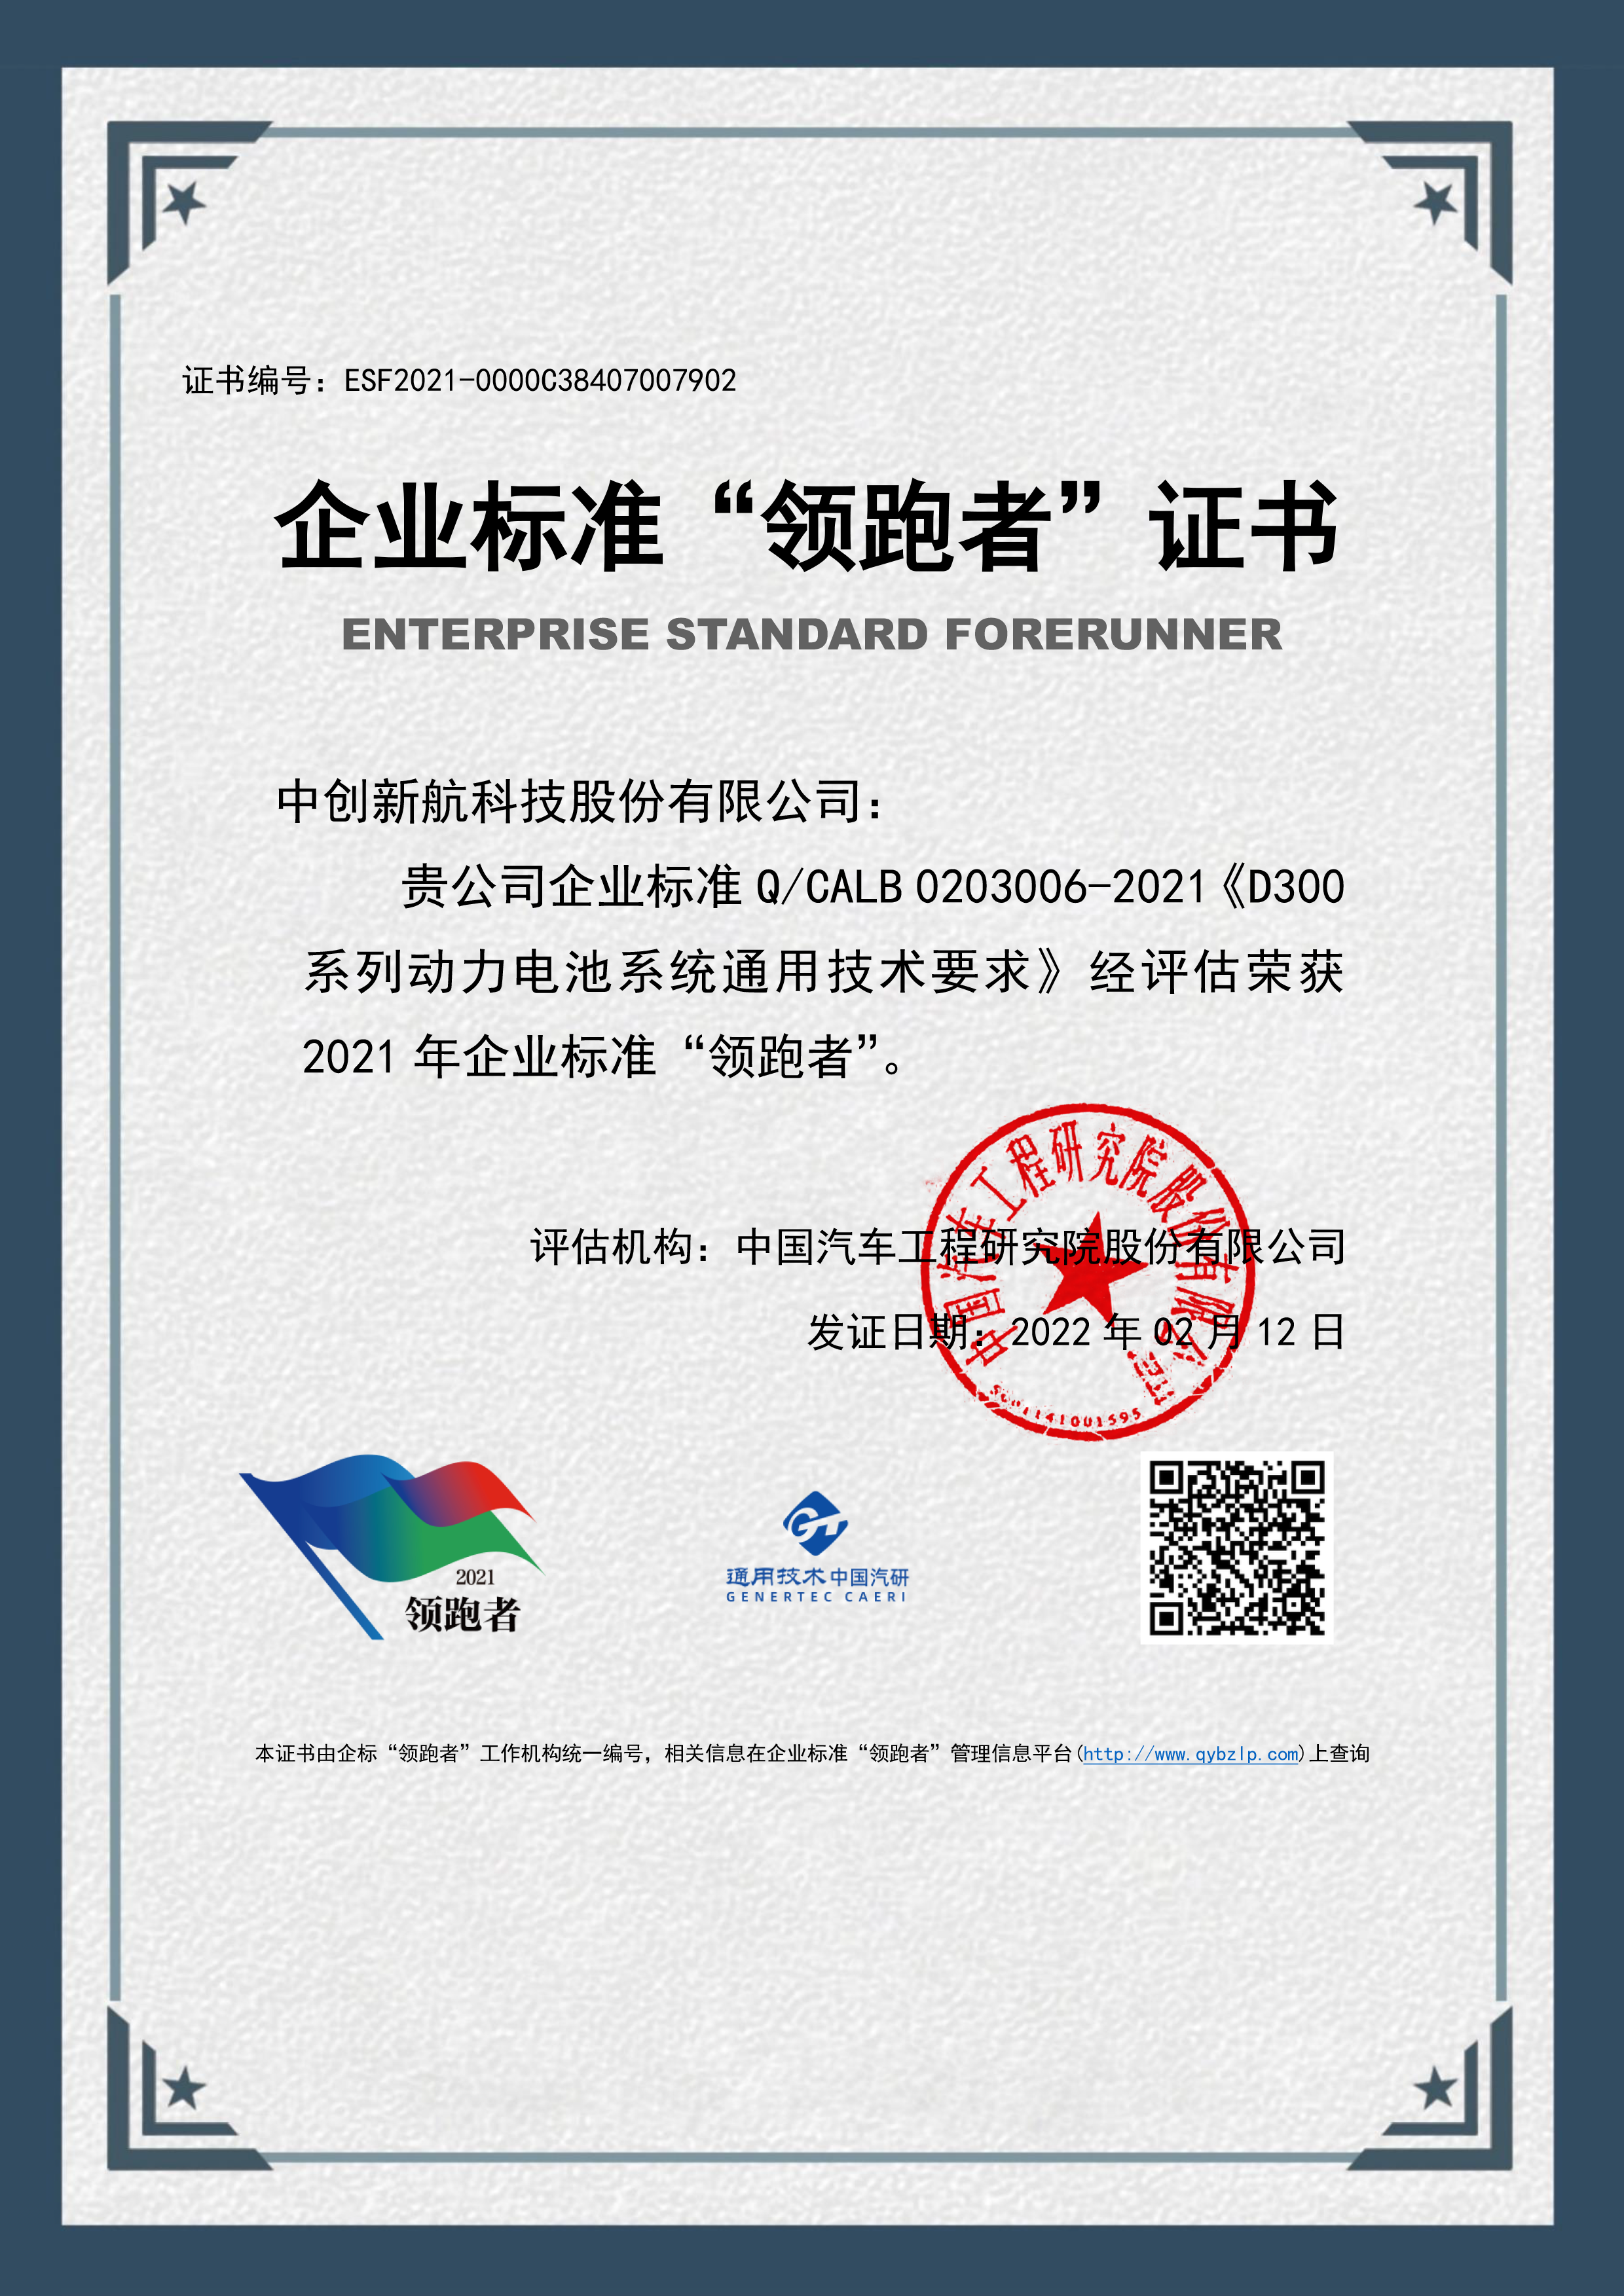 江苏省唯一 | 中创新航入选国家企业标准“领跑者”